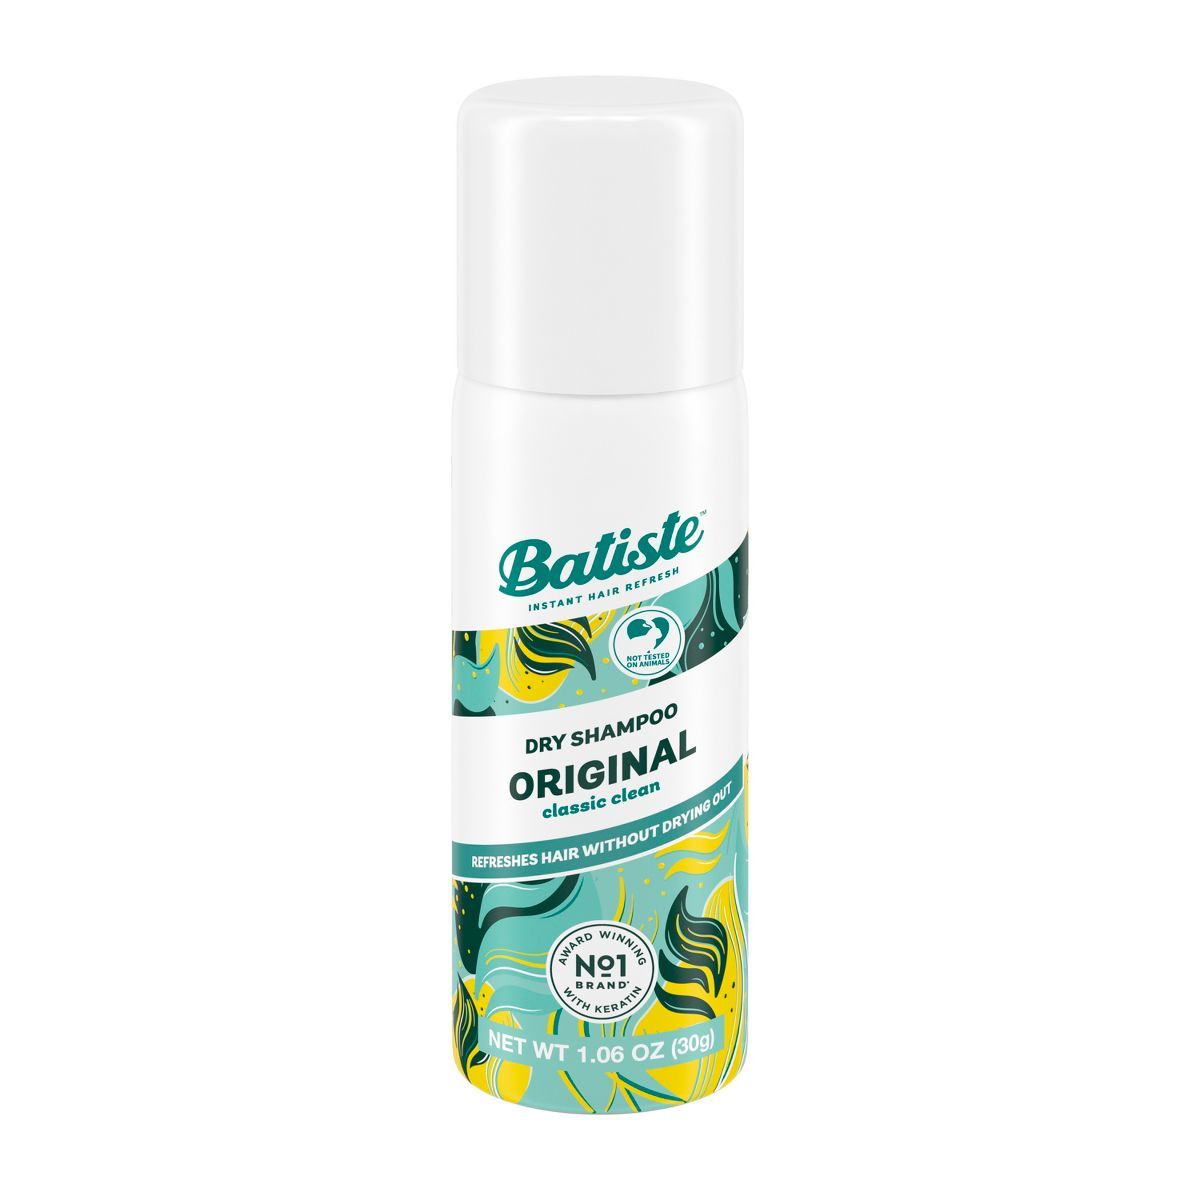 Batiste Original Dry Shampoo | Target